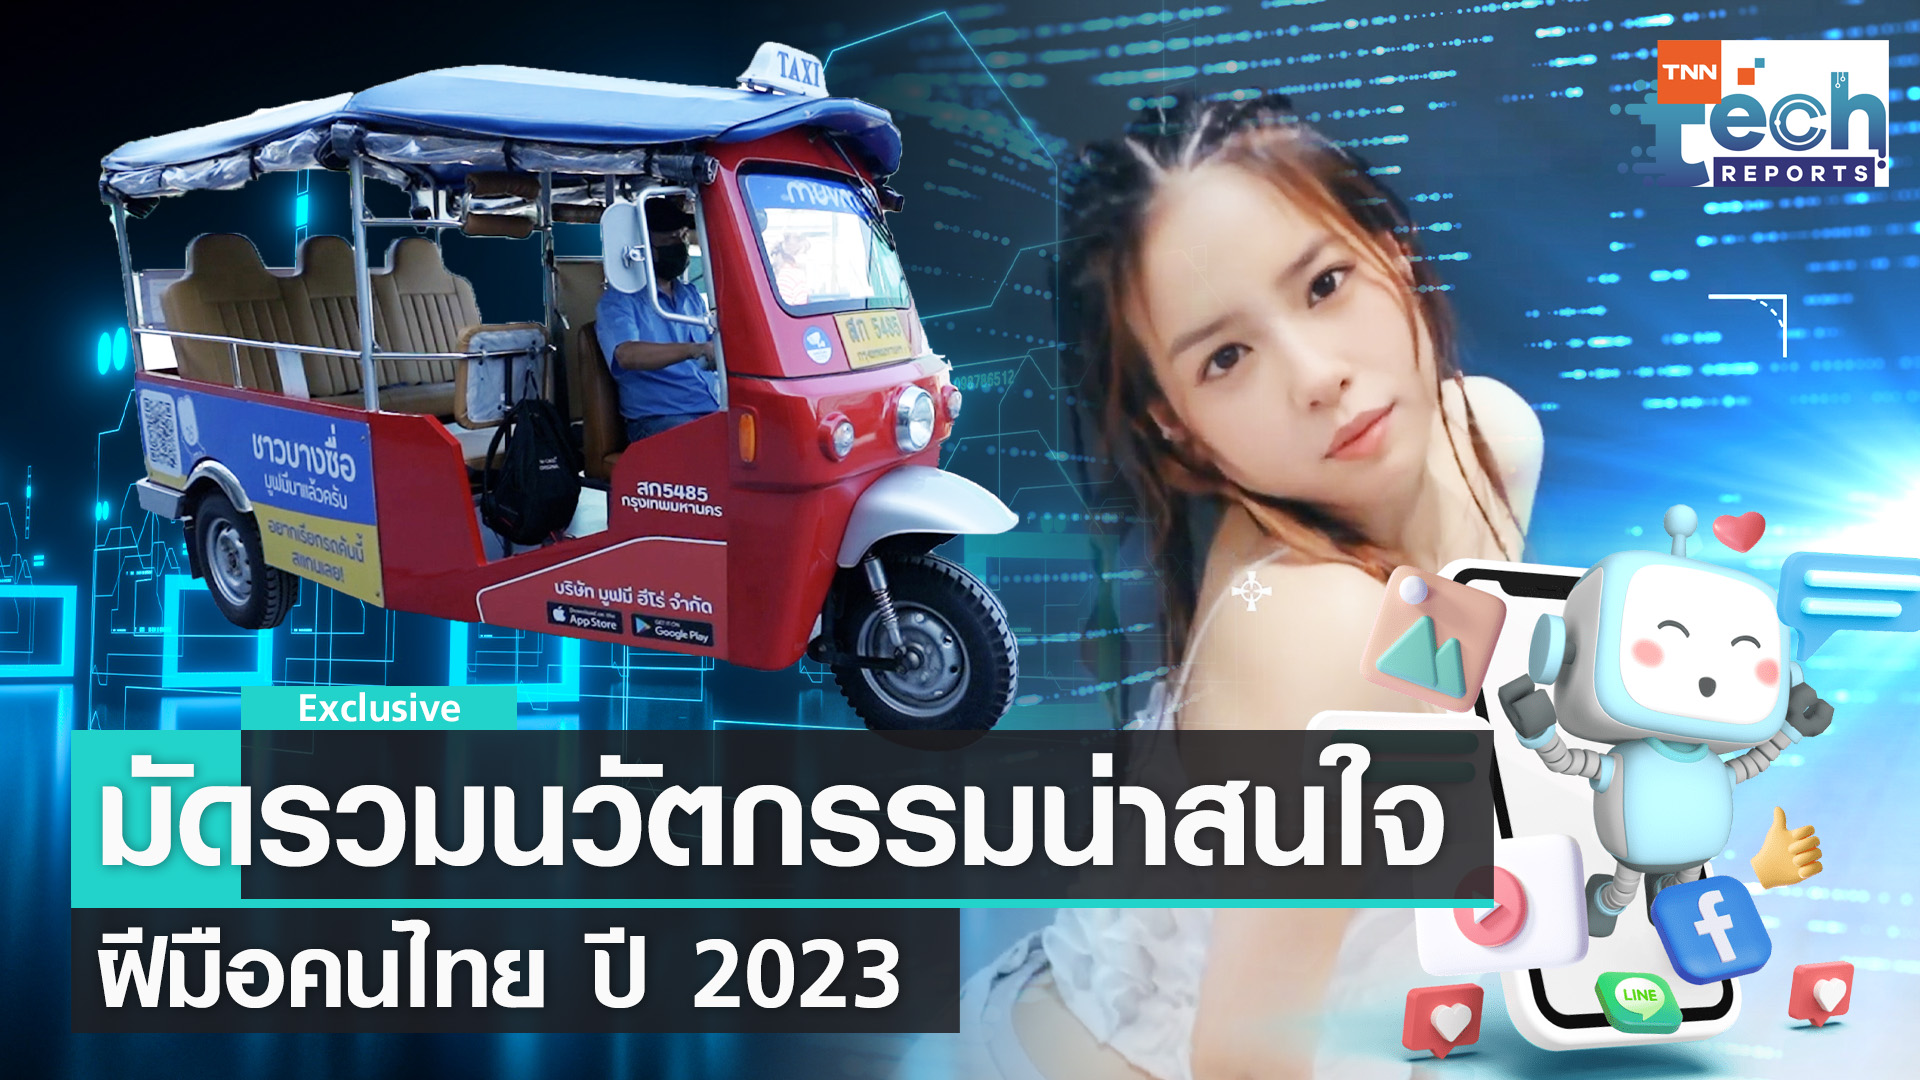 รวมนวัตกรรมฝีมือคนไทยที่น่าสนใจในปี 2023  | TNN Tech Reports